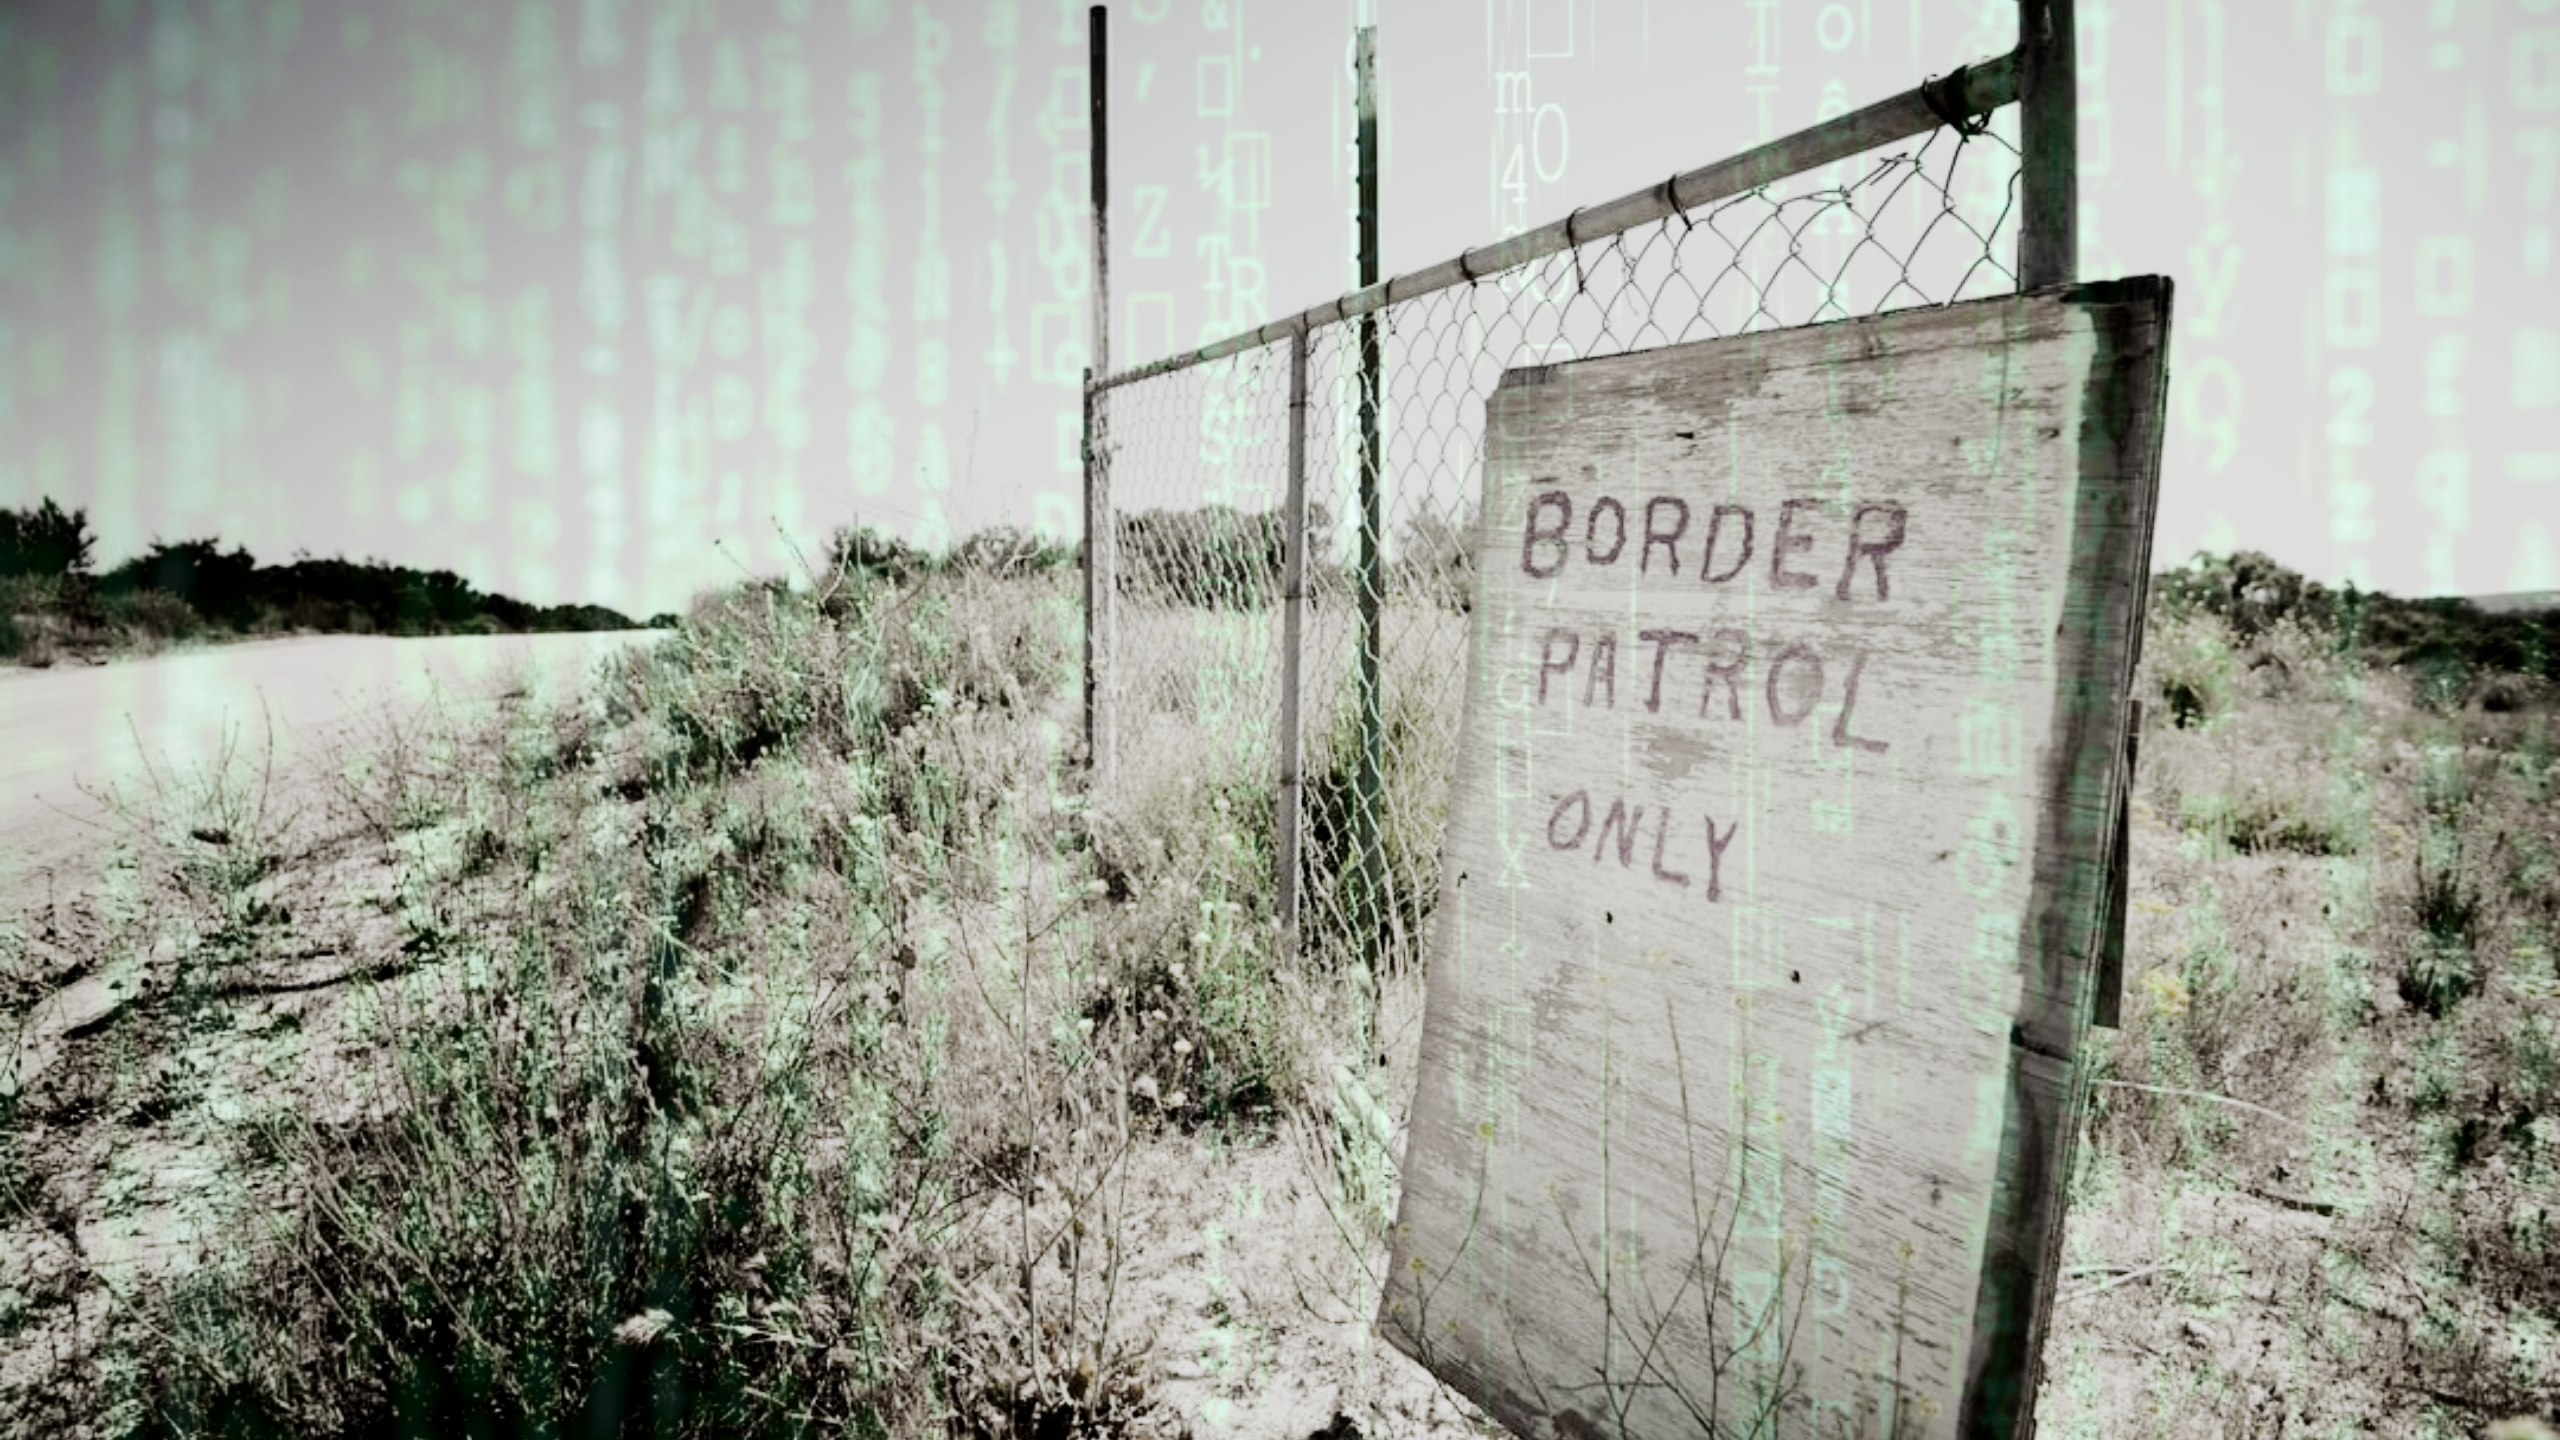 Заброшенный забор с надписью «Только пограничный патруль» с зеленым кодом